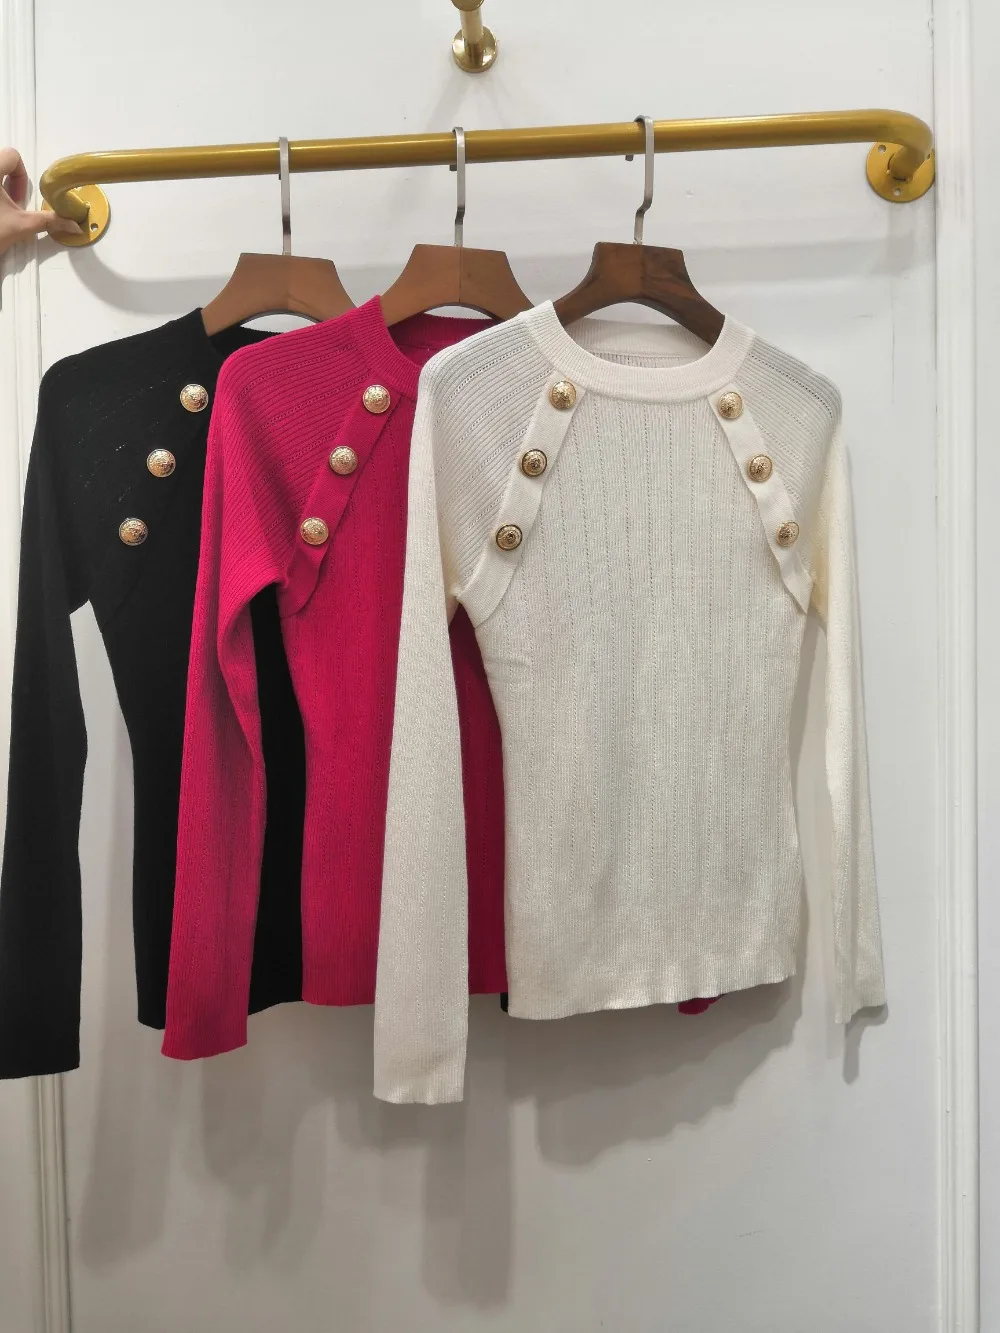 Повседневный свитер женский осенний шерстяной Тонкий джемпер женские джемперы пуловер 3 цвета ddxgz2